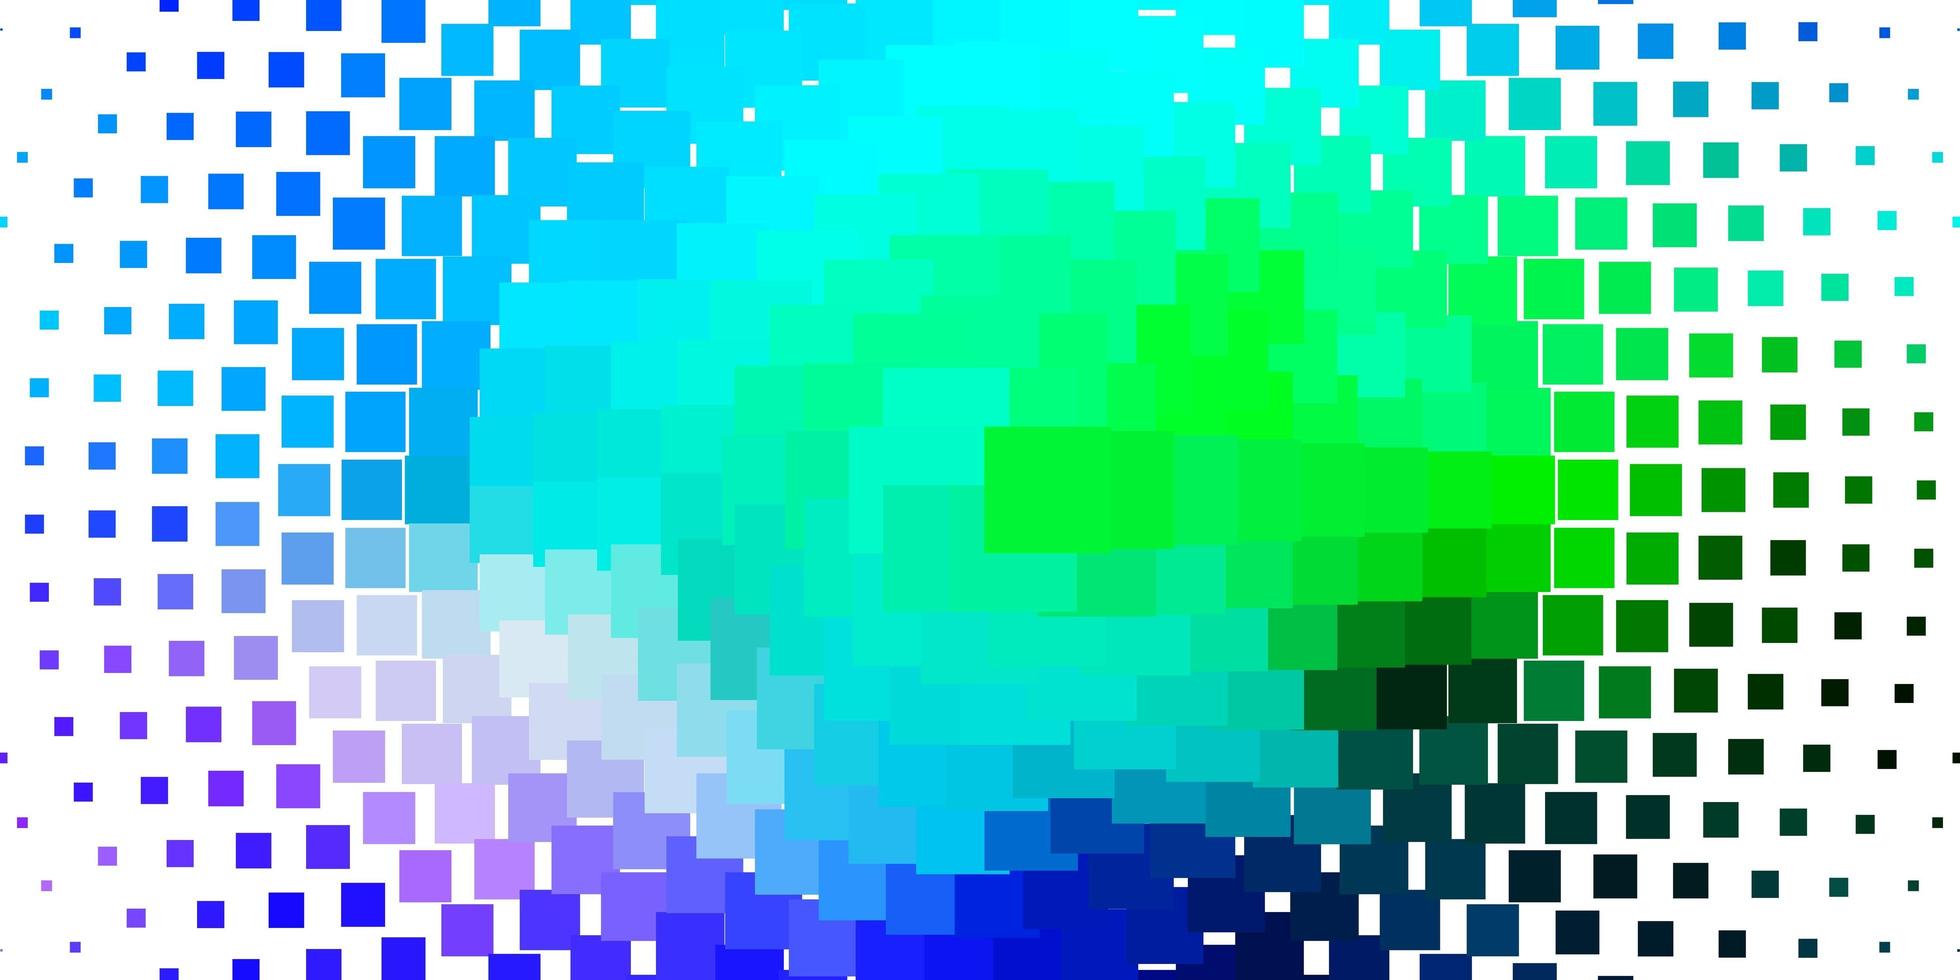 pano de fundo vector azul e verde claro com retângulos.